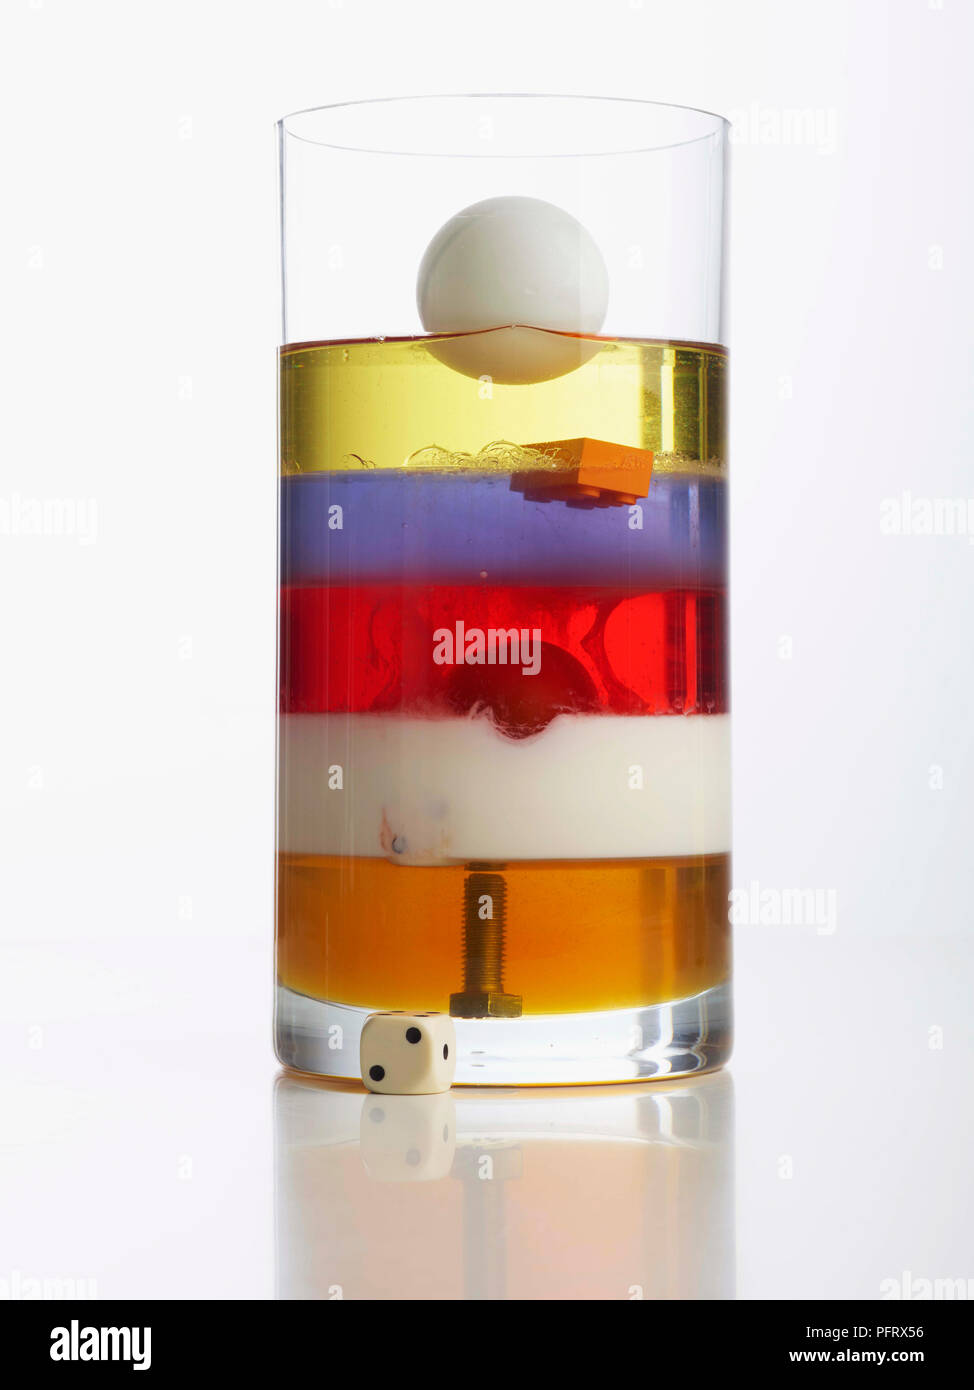 Torre de densidad mostrando jarrón con 5 capas: miel, leche, detergente líquido, agua, aceite vegetal. Perno, tomate cherry, y pelota de tenis de mesa también están en el florero. Foto de stock